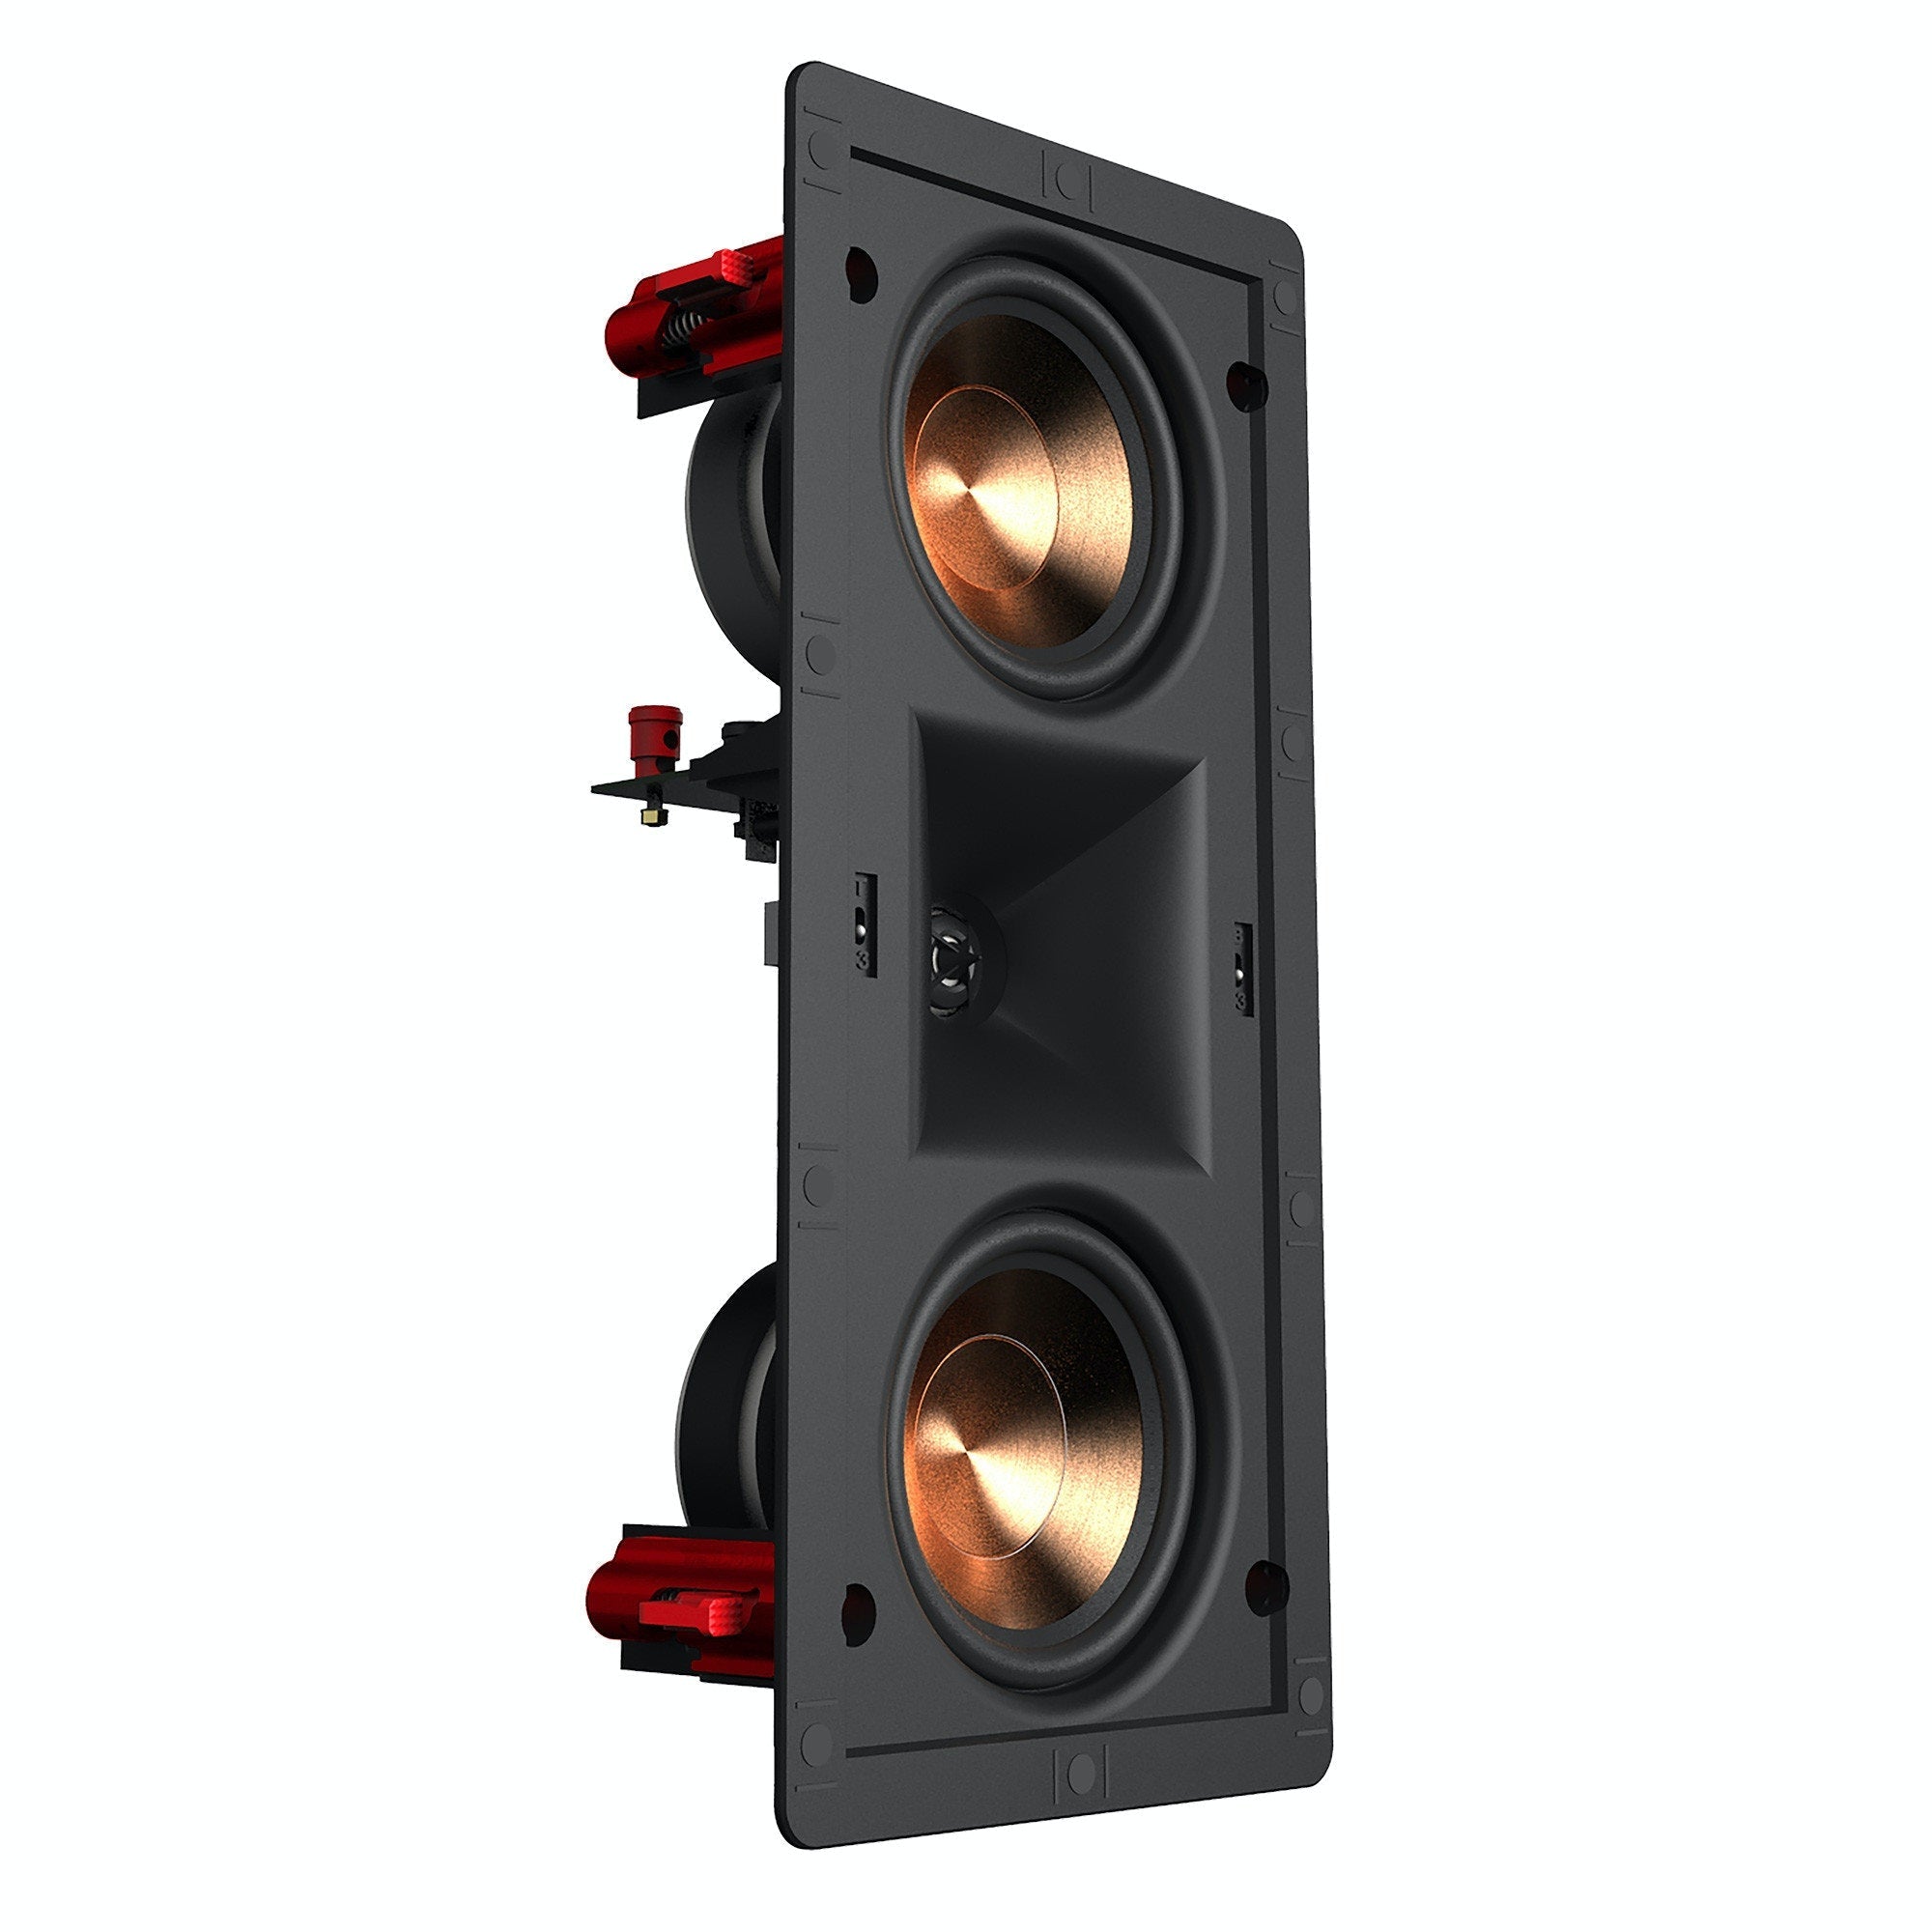 PRO-24RW LCR In-Wall Speaker (Single)